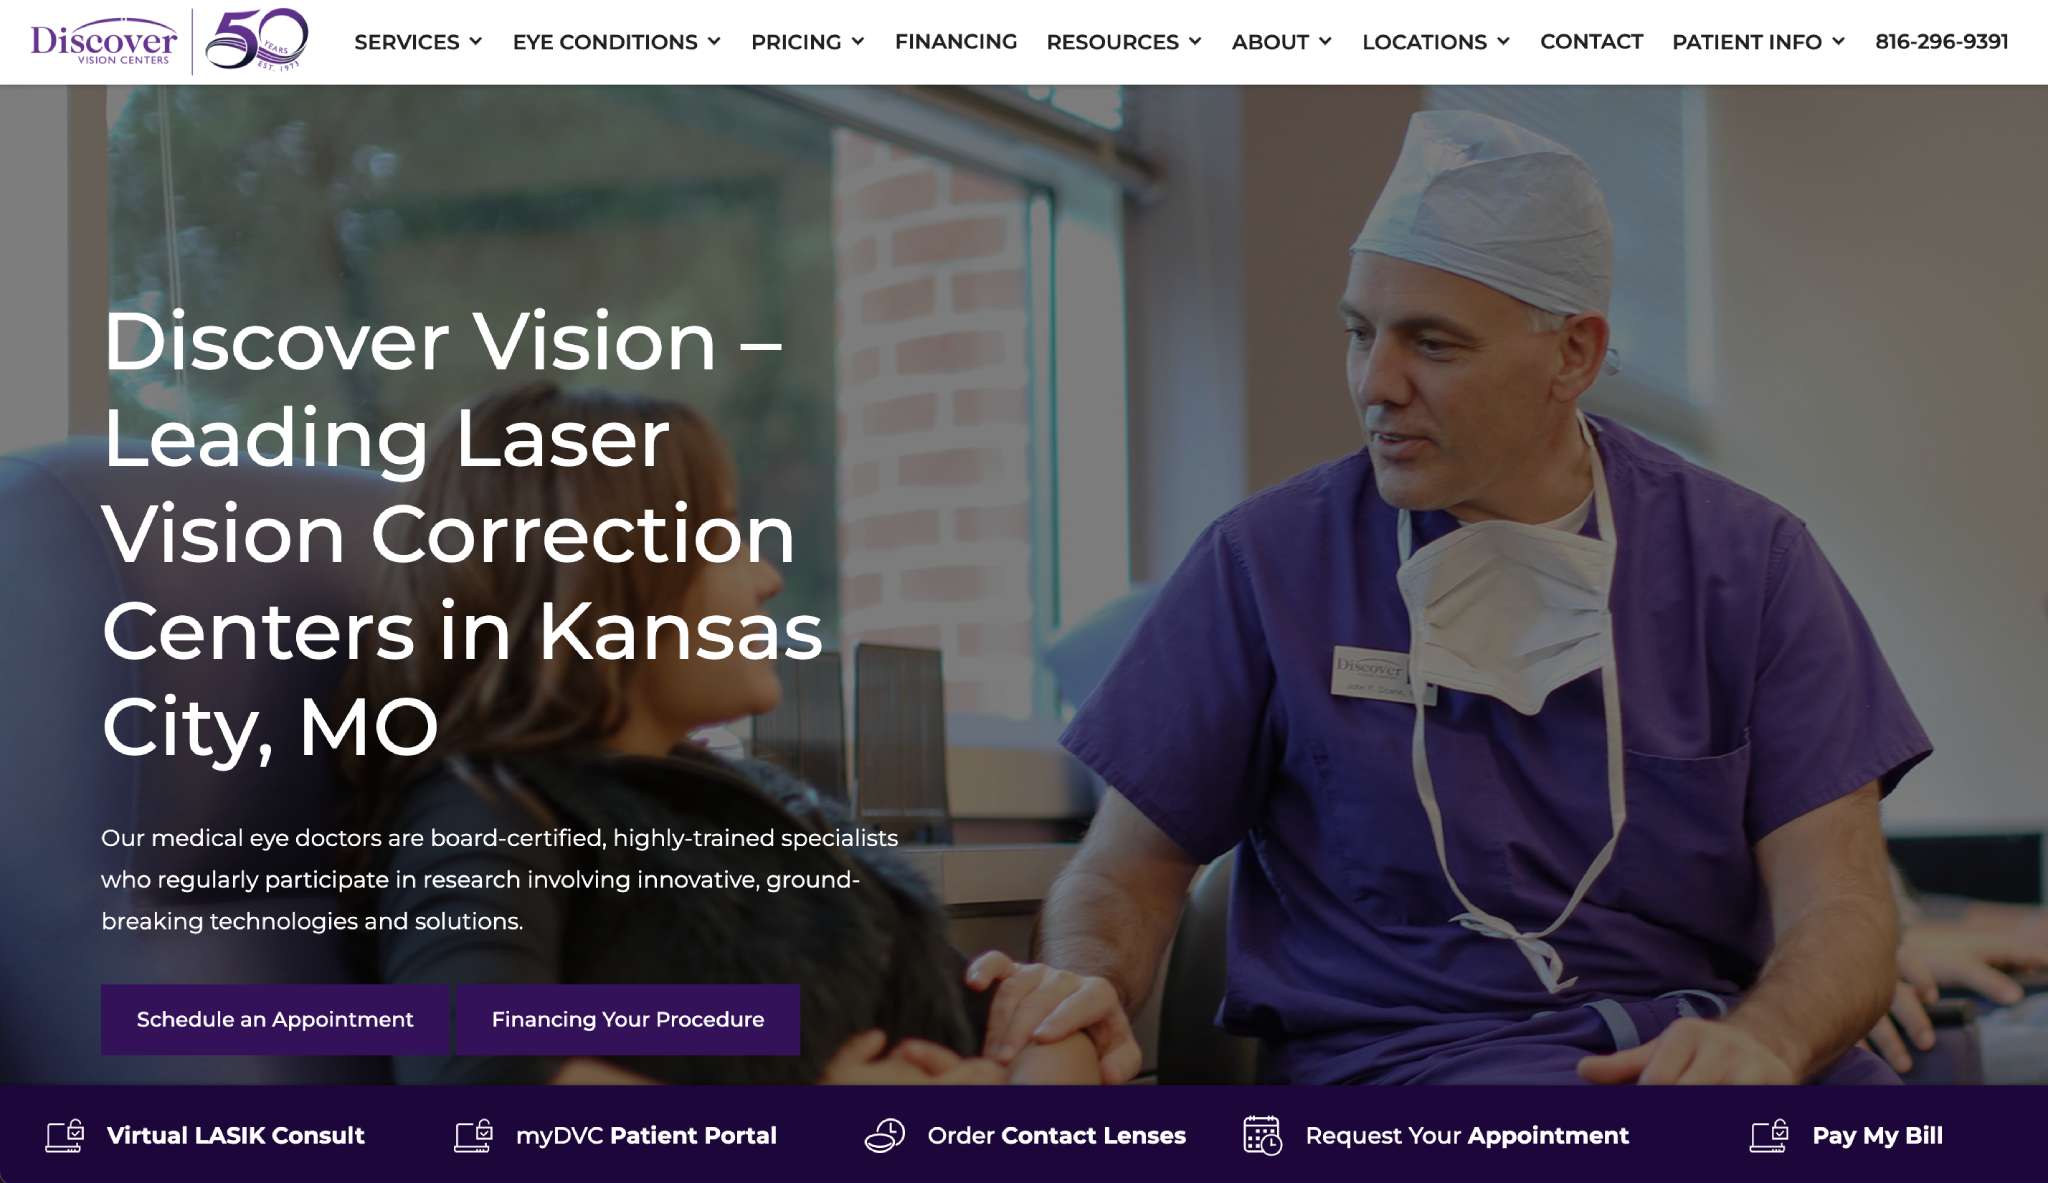 Discover Vision - Medical Website Design